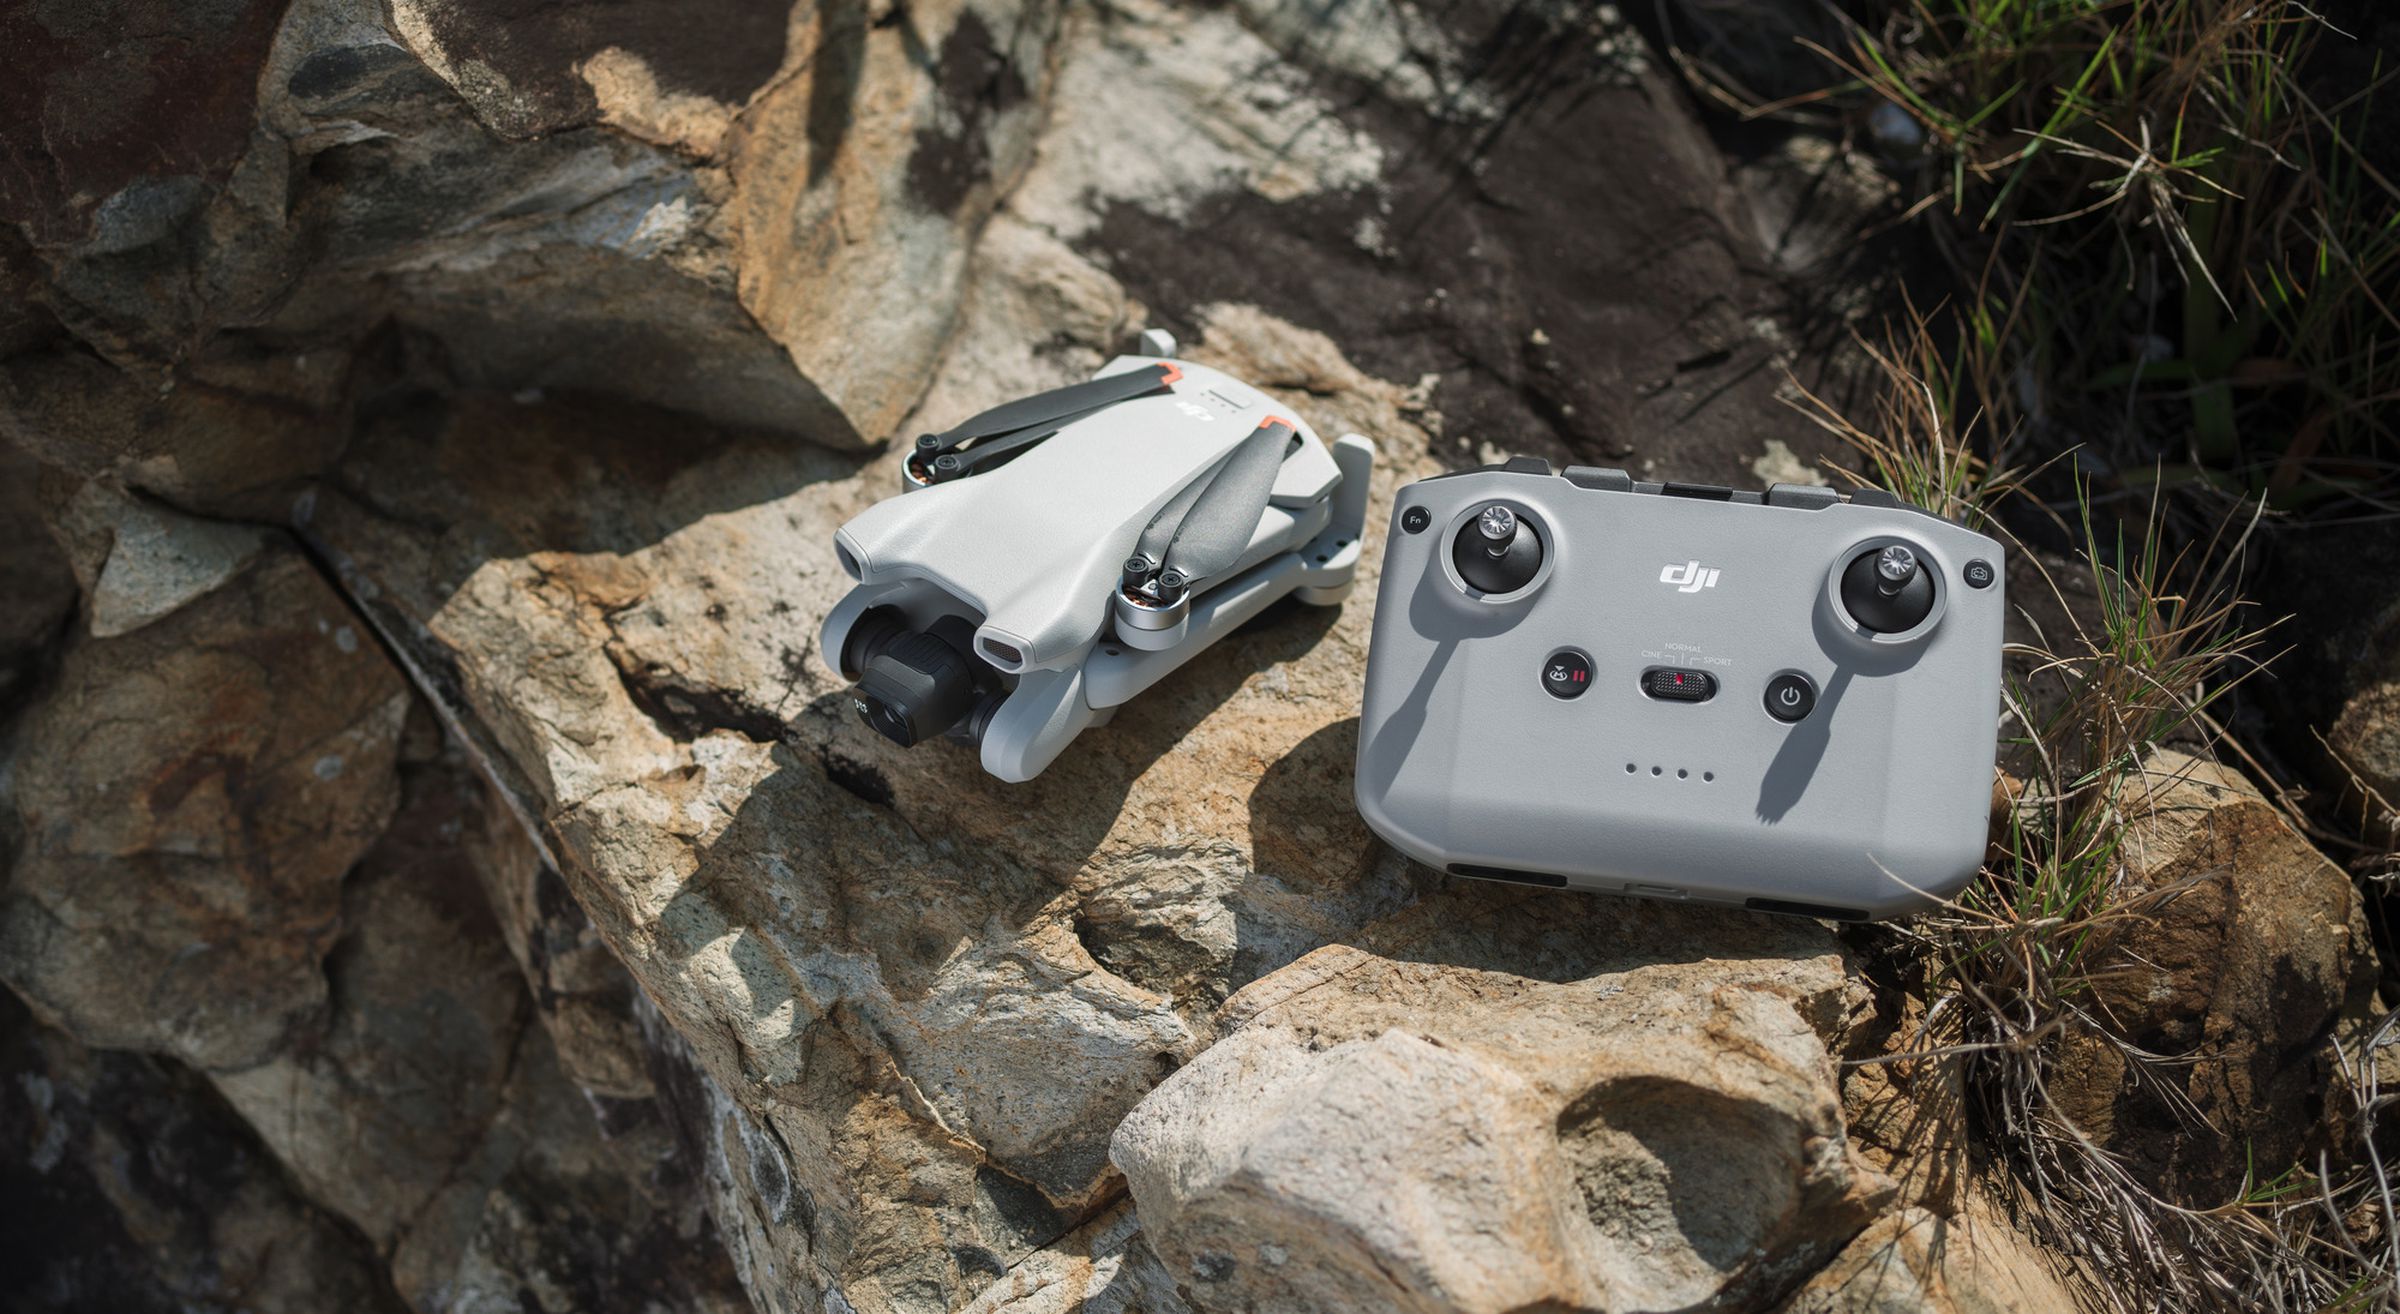 Kanatsız DJI Mini 3 drone, DJI RC-N1 kontrol cihazının yanına uzatıldı. Her iki ürün de dış ortamda büyük bir kayanın üzerinde durmaktadır.